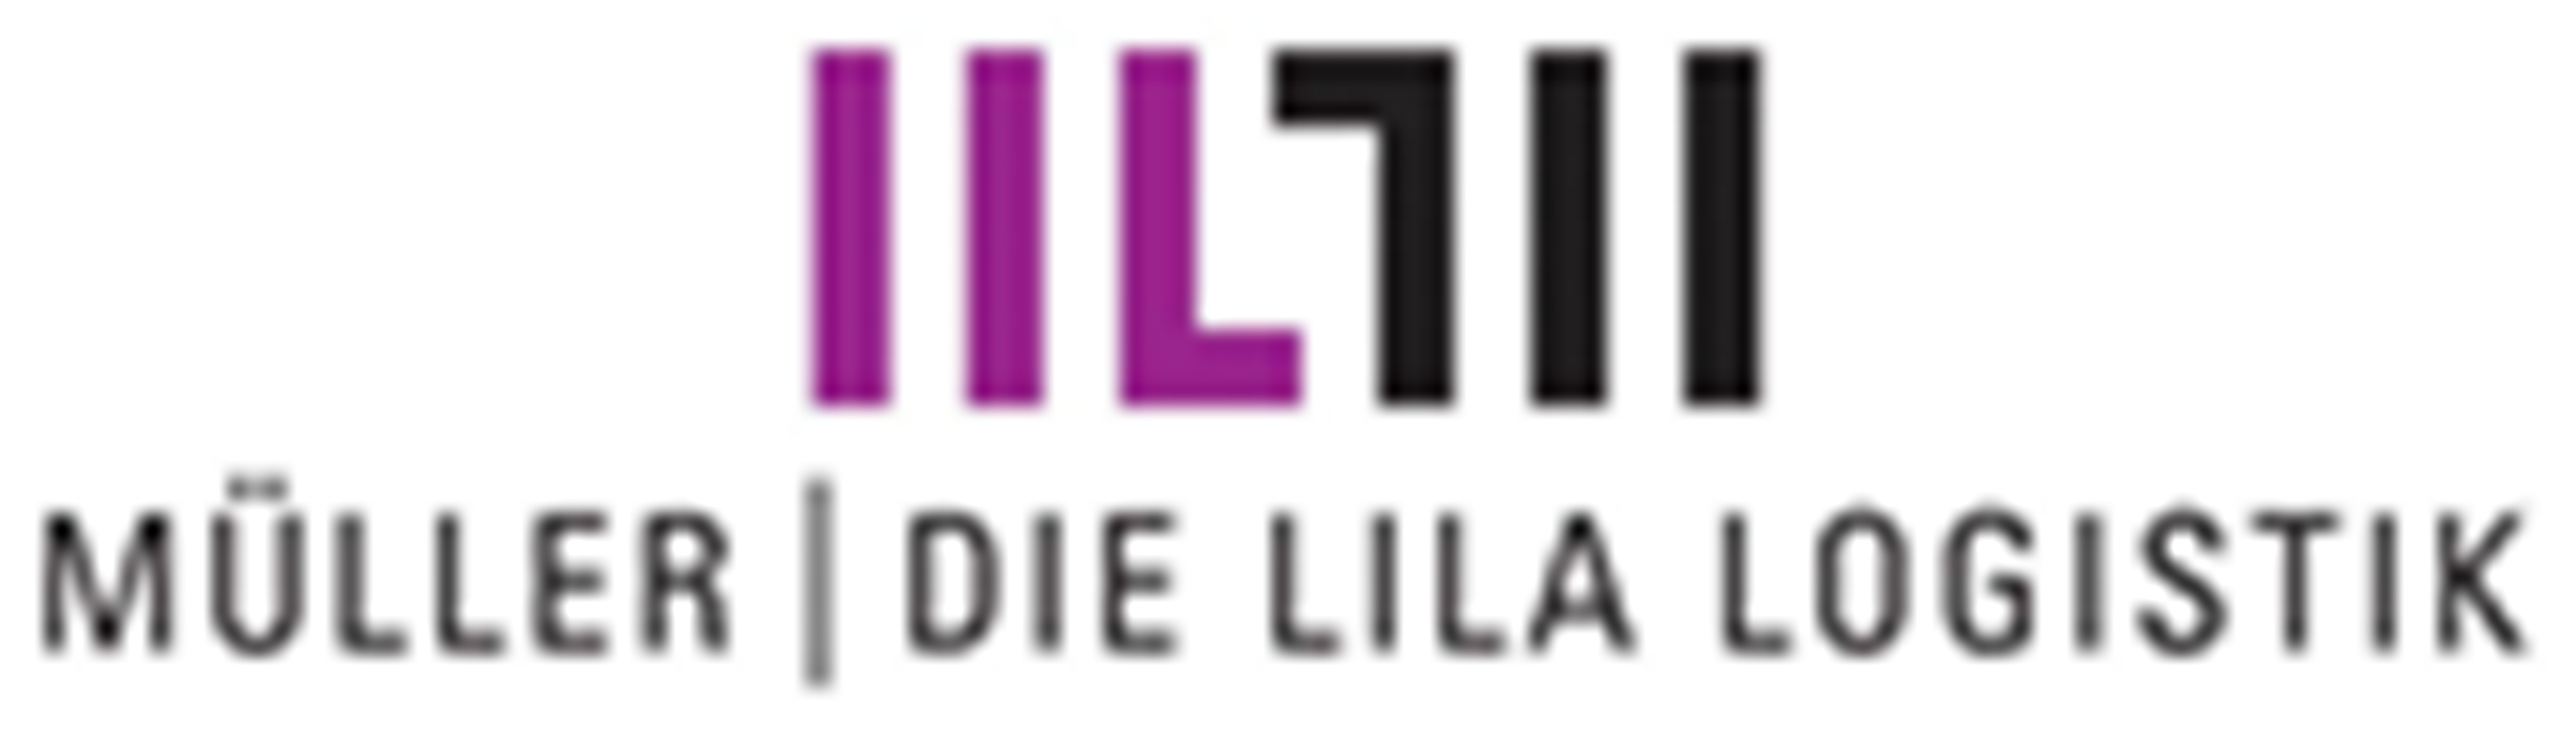 Mueller Die lila Logistik Ost GmbH und Co. KG